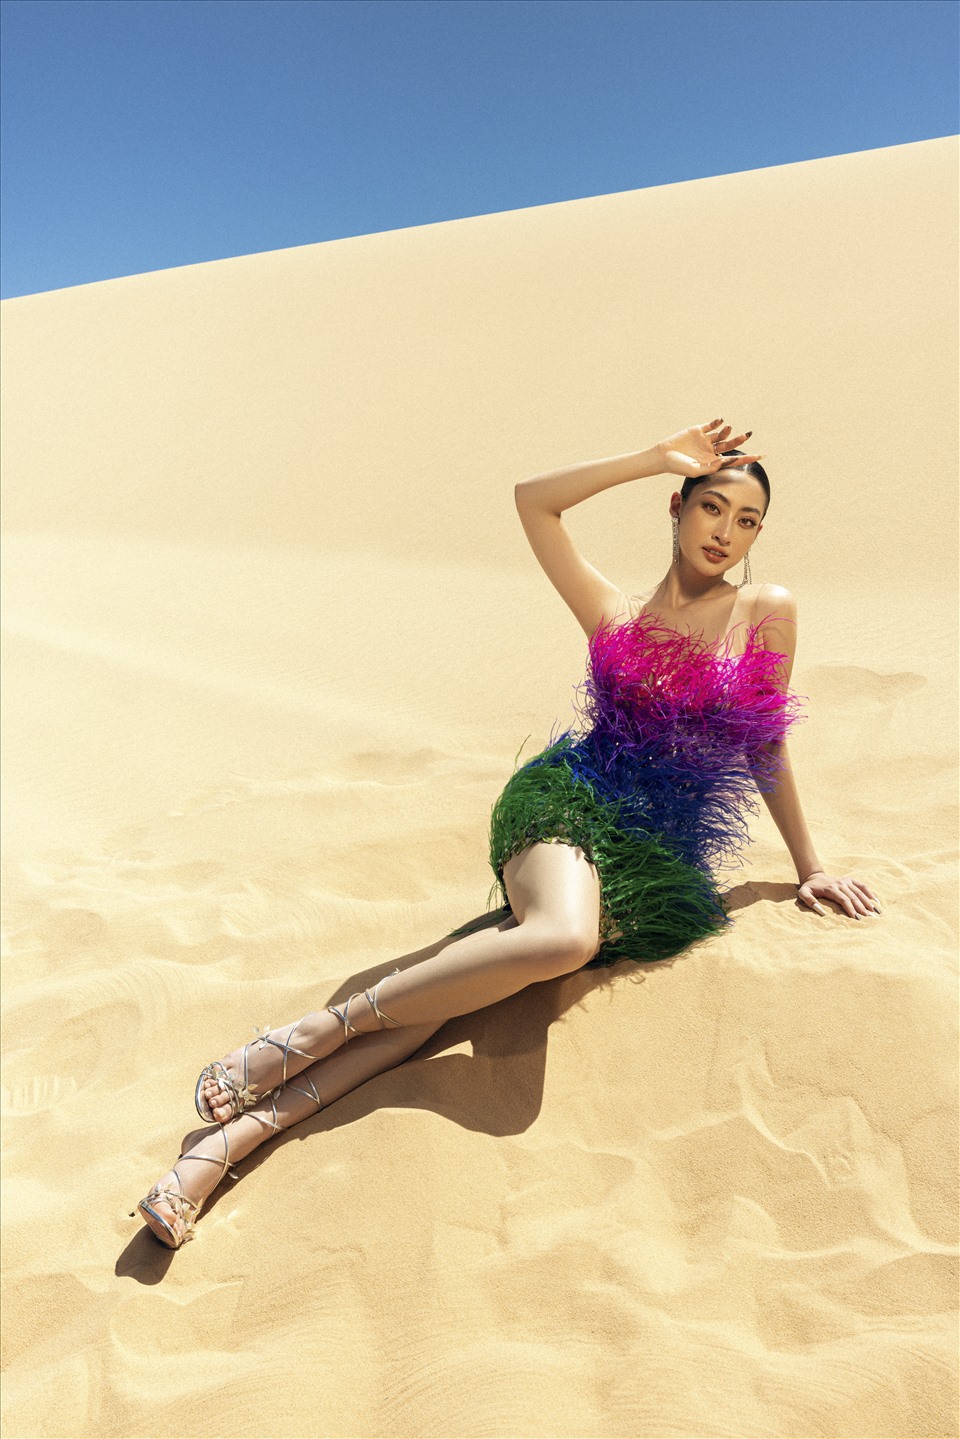 Bộ ảnh “Sa Vũ” được khán giả đánh giá là “một bức tranh sa mạc từ 8 loại chất liệu và kỹ thuật thêu khác nhau”, với sự công phu trong bố cục, phối hợp chất liệu và màu sắc để tạo nên những tác phẩm thời trang đầy chất thơ.